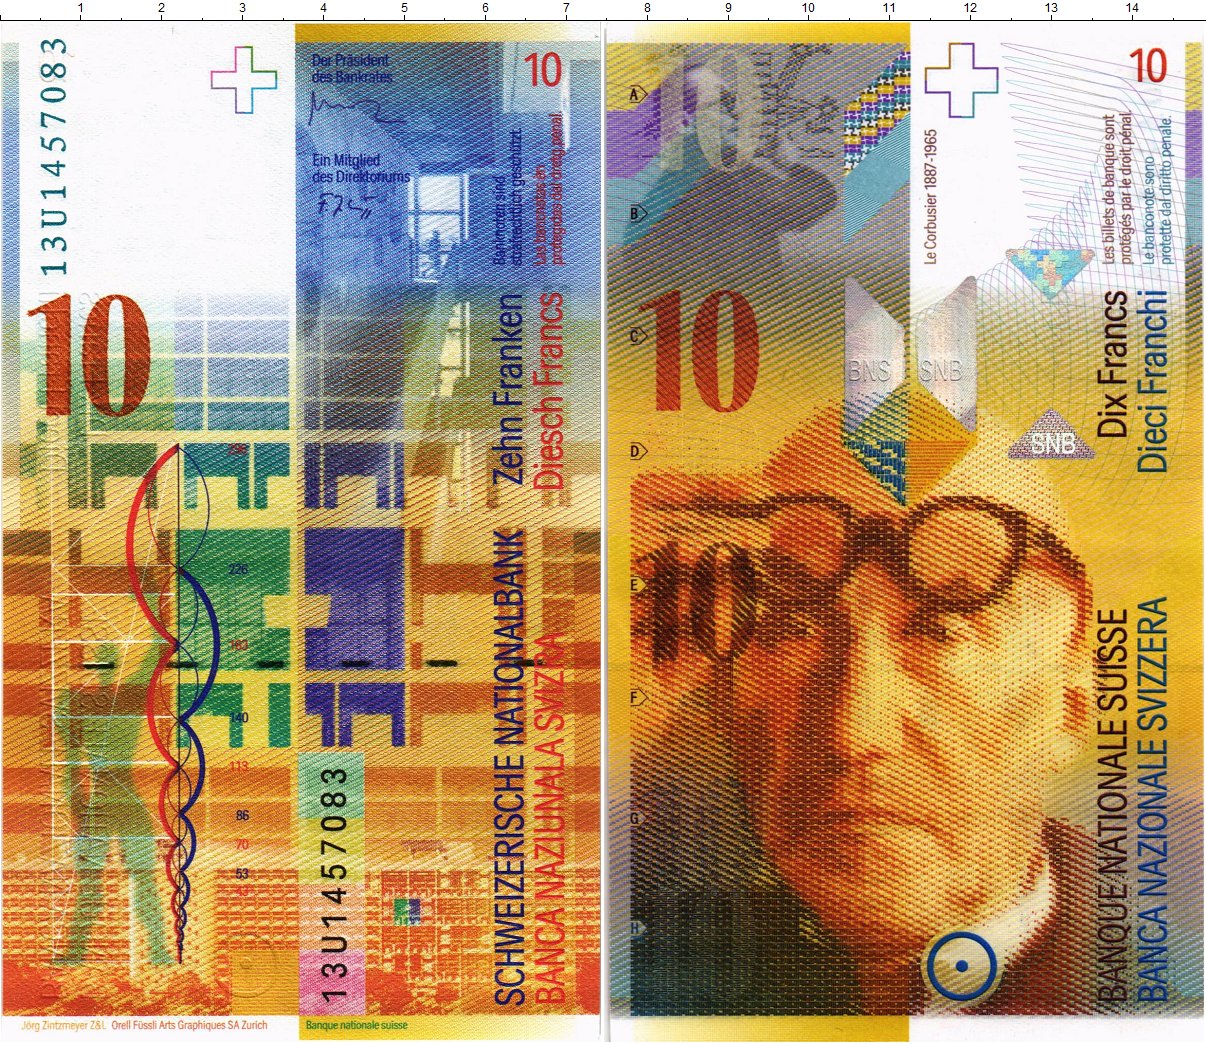 Швейцарские франки фото